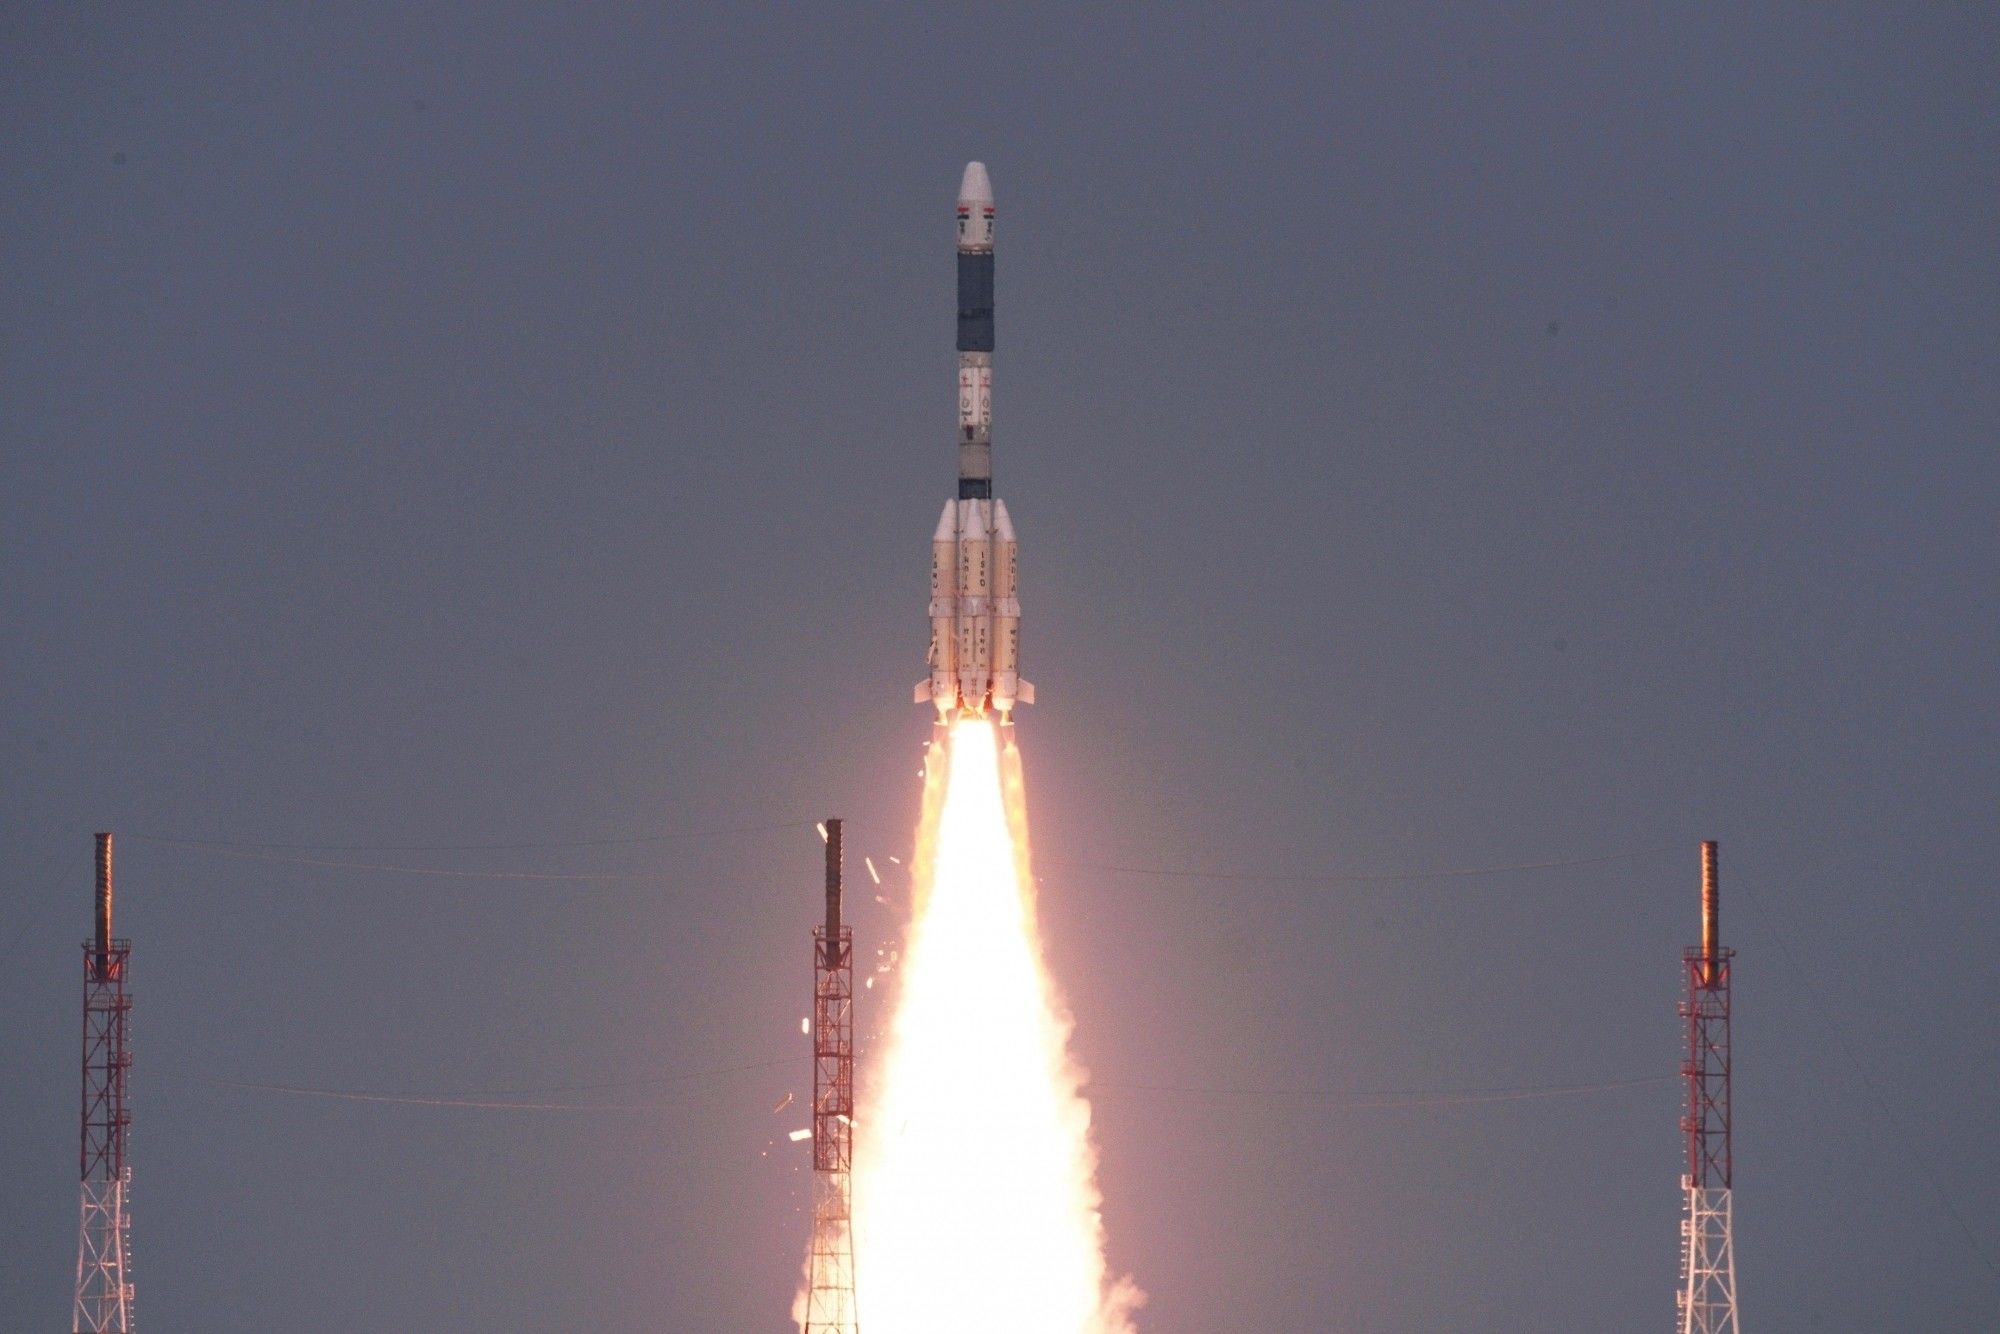 भारत के दक्षिण एशिया उपग्रह के प्रक्षेपण की उलटी गिनती शुरू